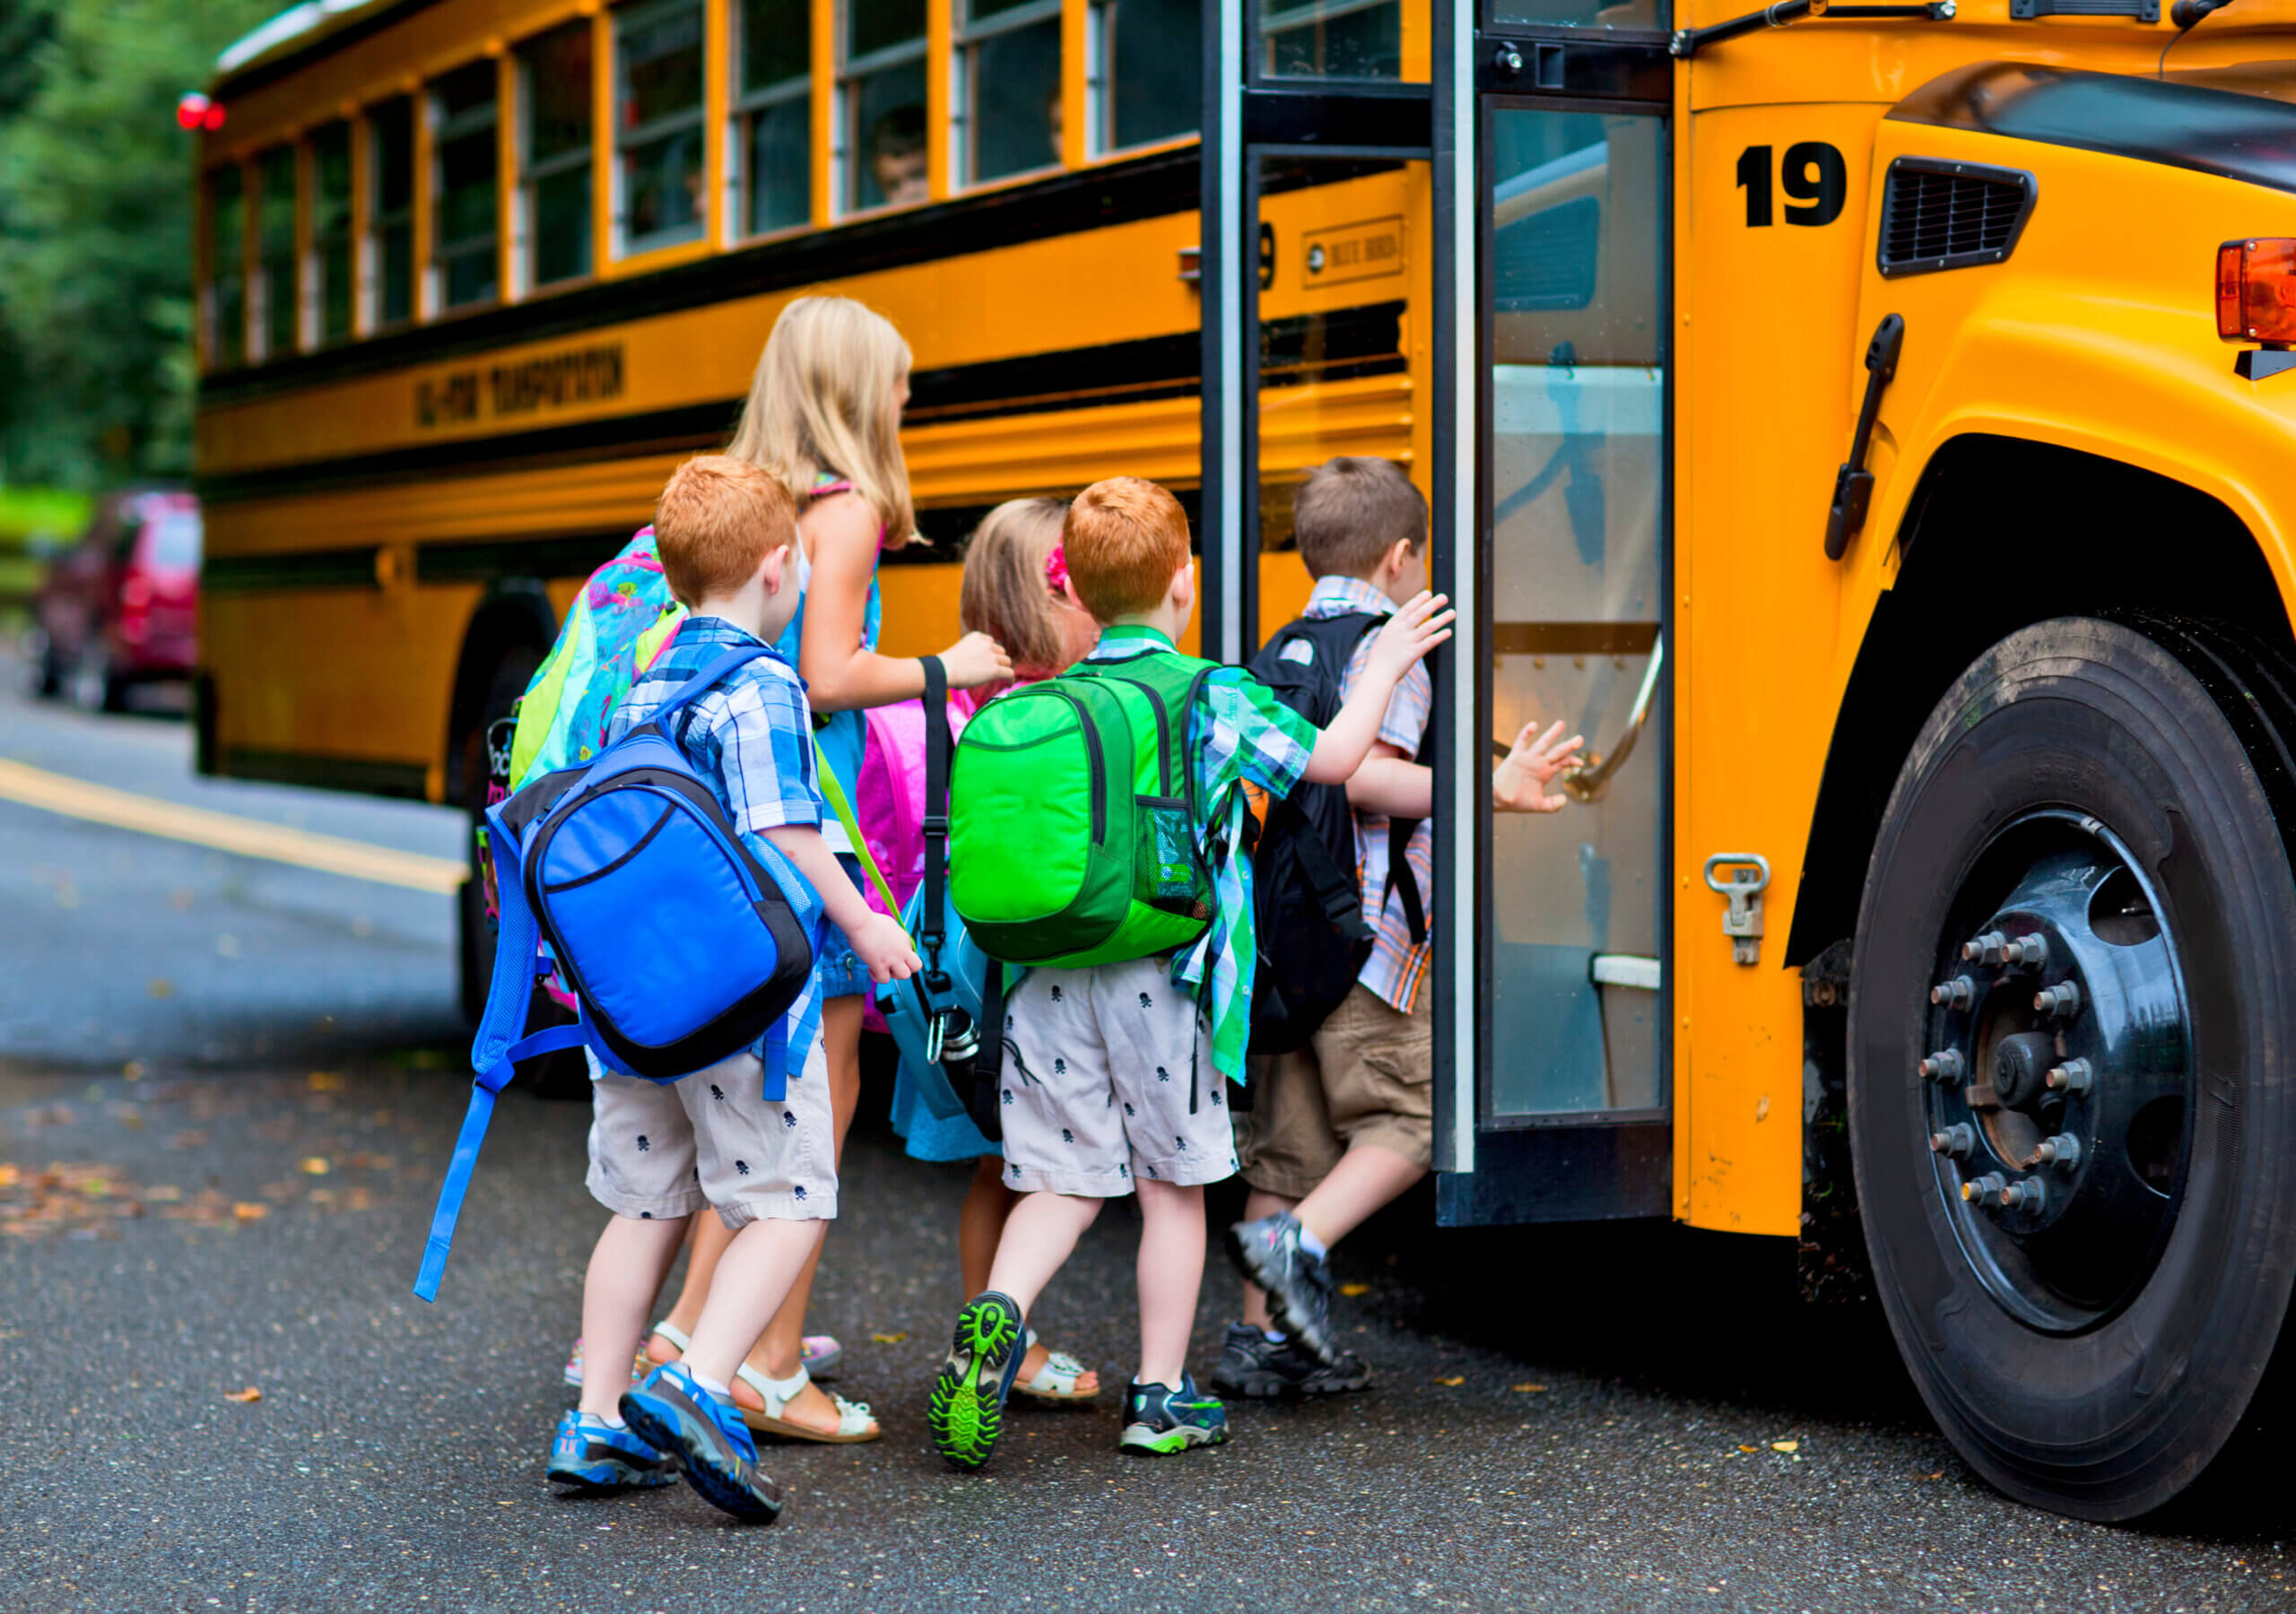 Перевозка детей автобусом заказ. Автобусные экскурсии дети. Школьные экскурсии автобусные. Дети в автобусе на экскурсии. Автобус для детей.